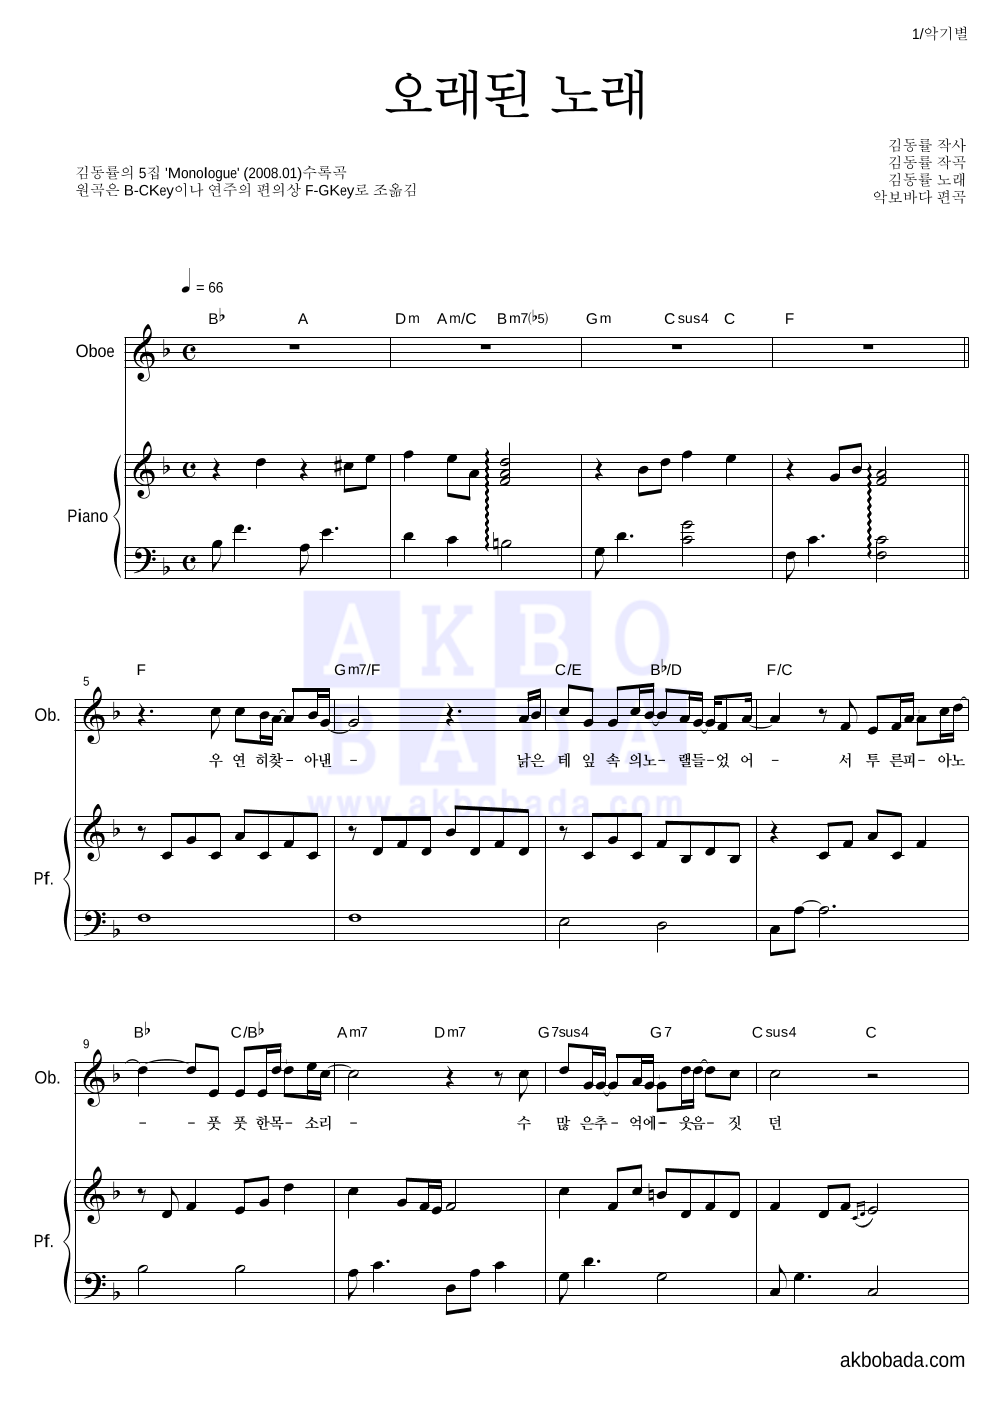 김동률 - 오래된 노래 오보에&피아노 악보 